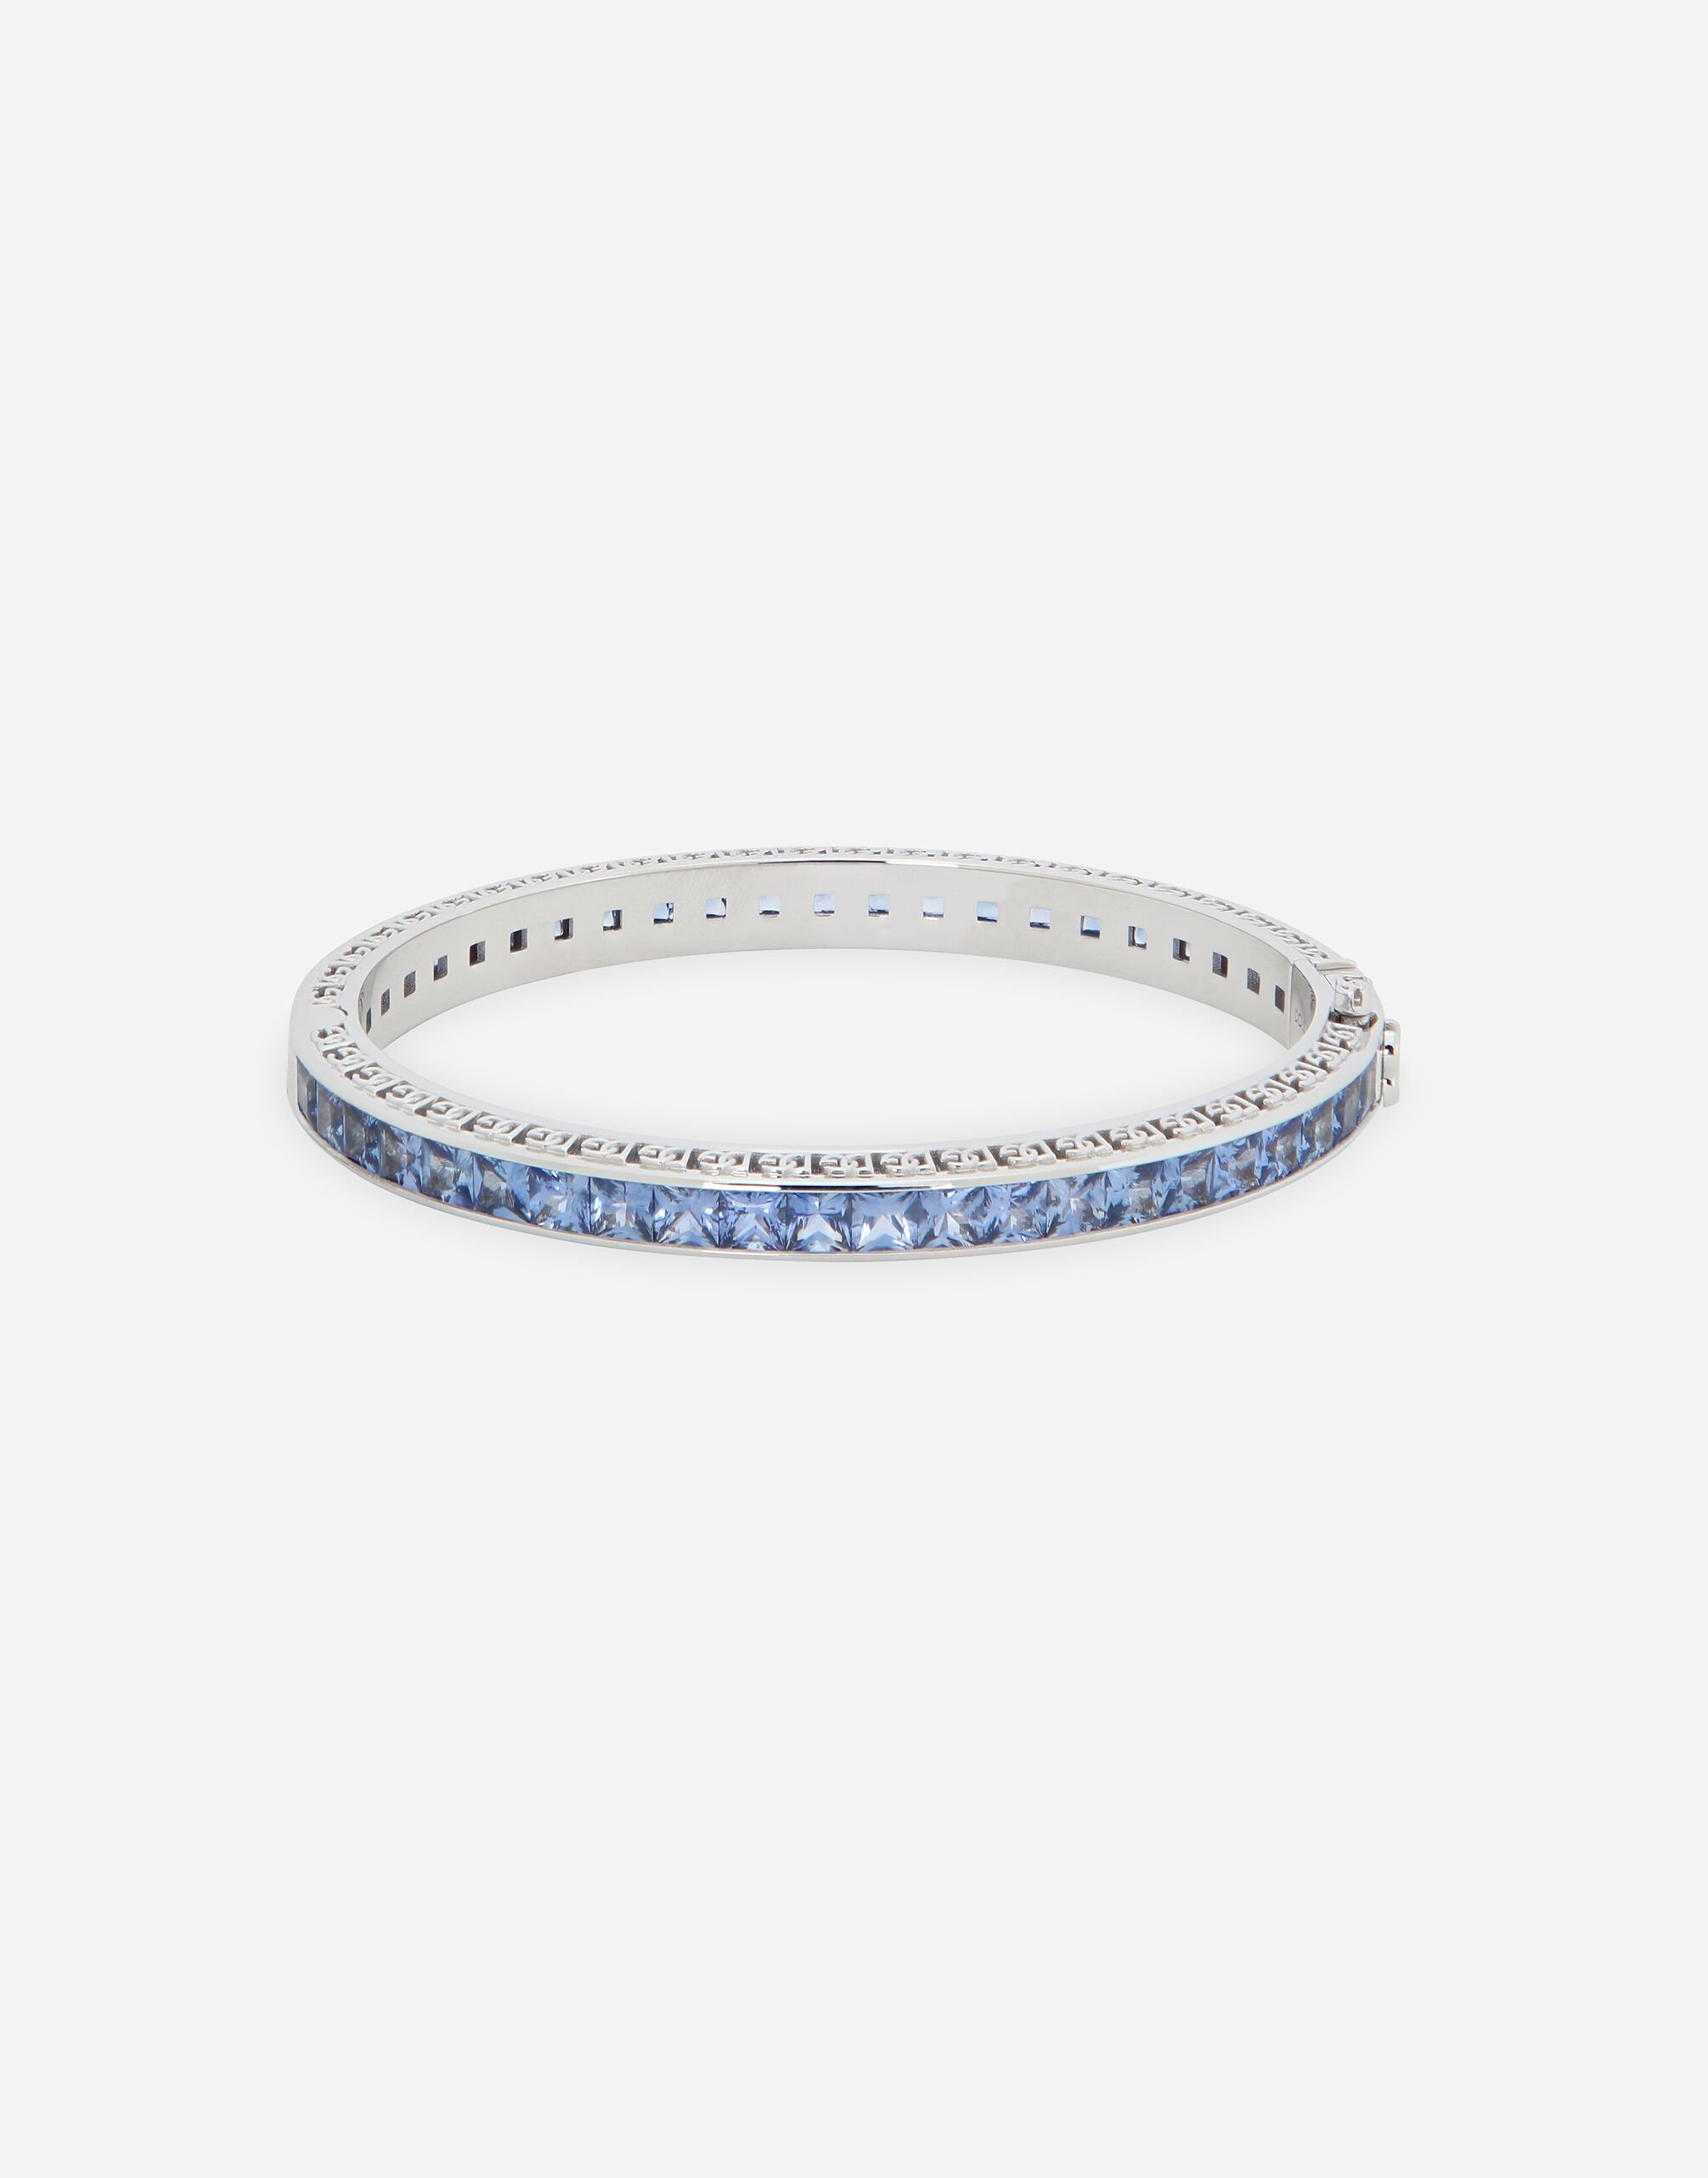 Dolce & Gabbana Anna bracelet in white gold 18kt with blue sapphires Weiss WBQA1GWTSQS